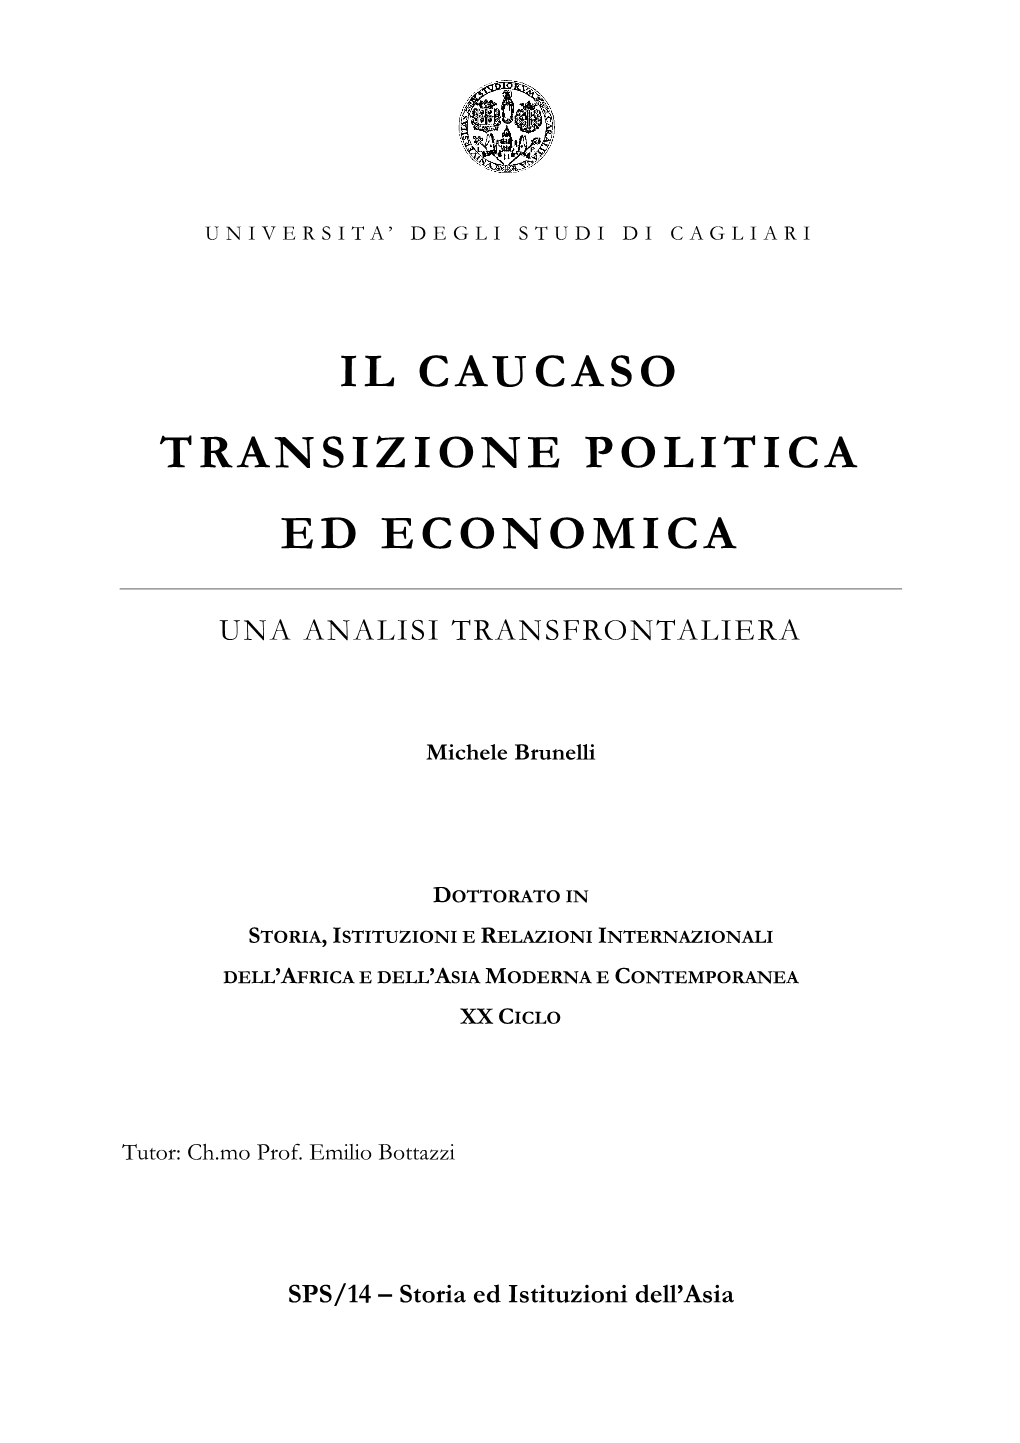 Il Caucaso Transizione Politica Ed Economica